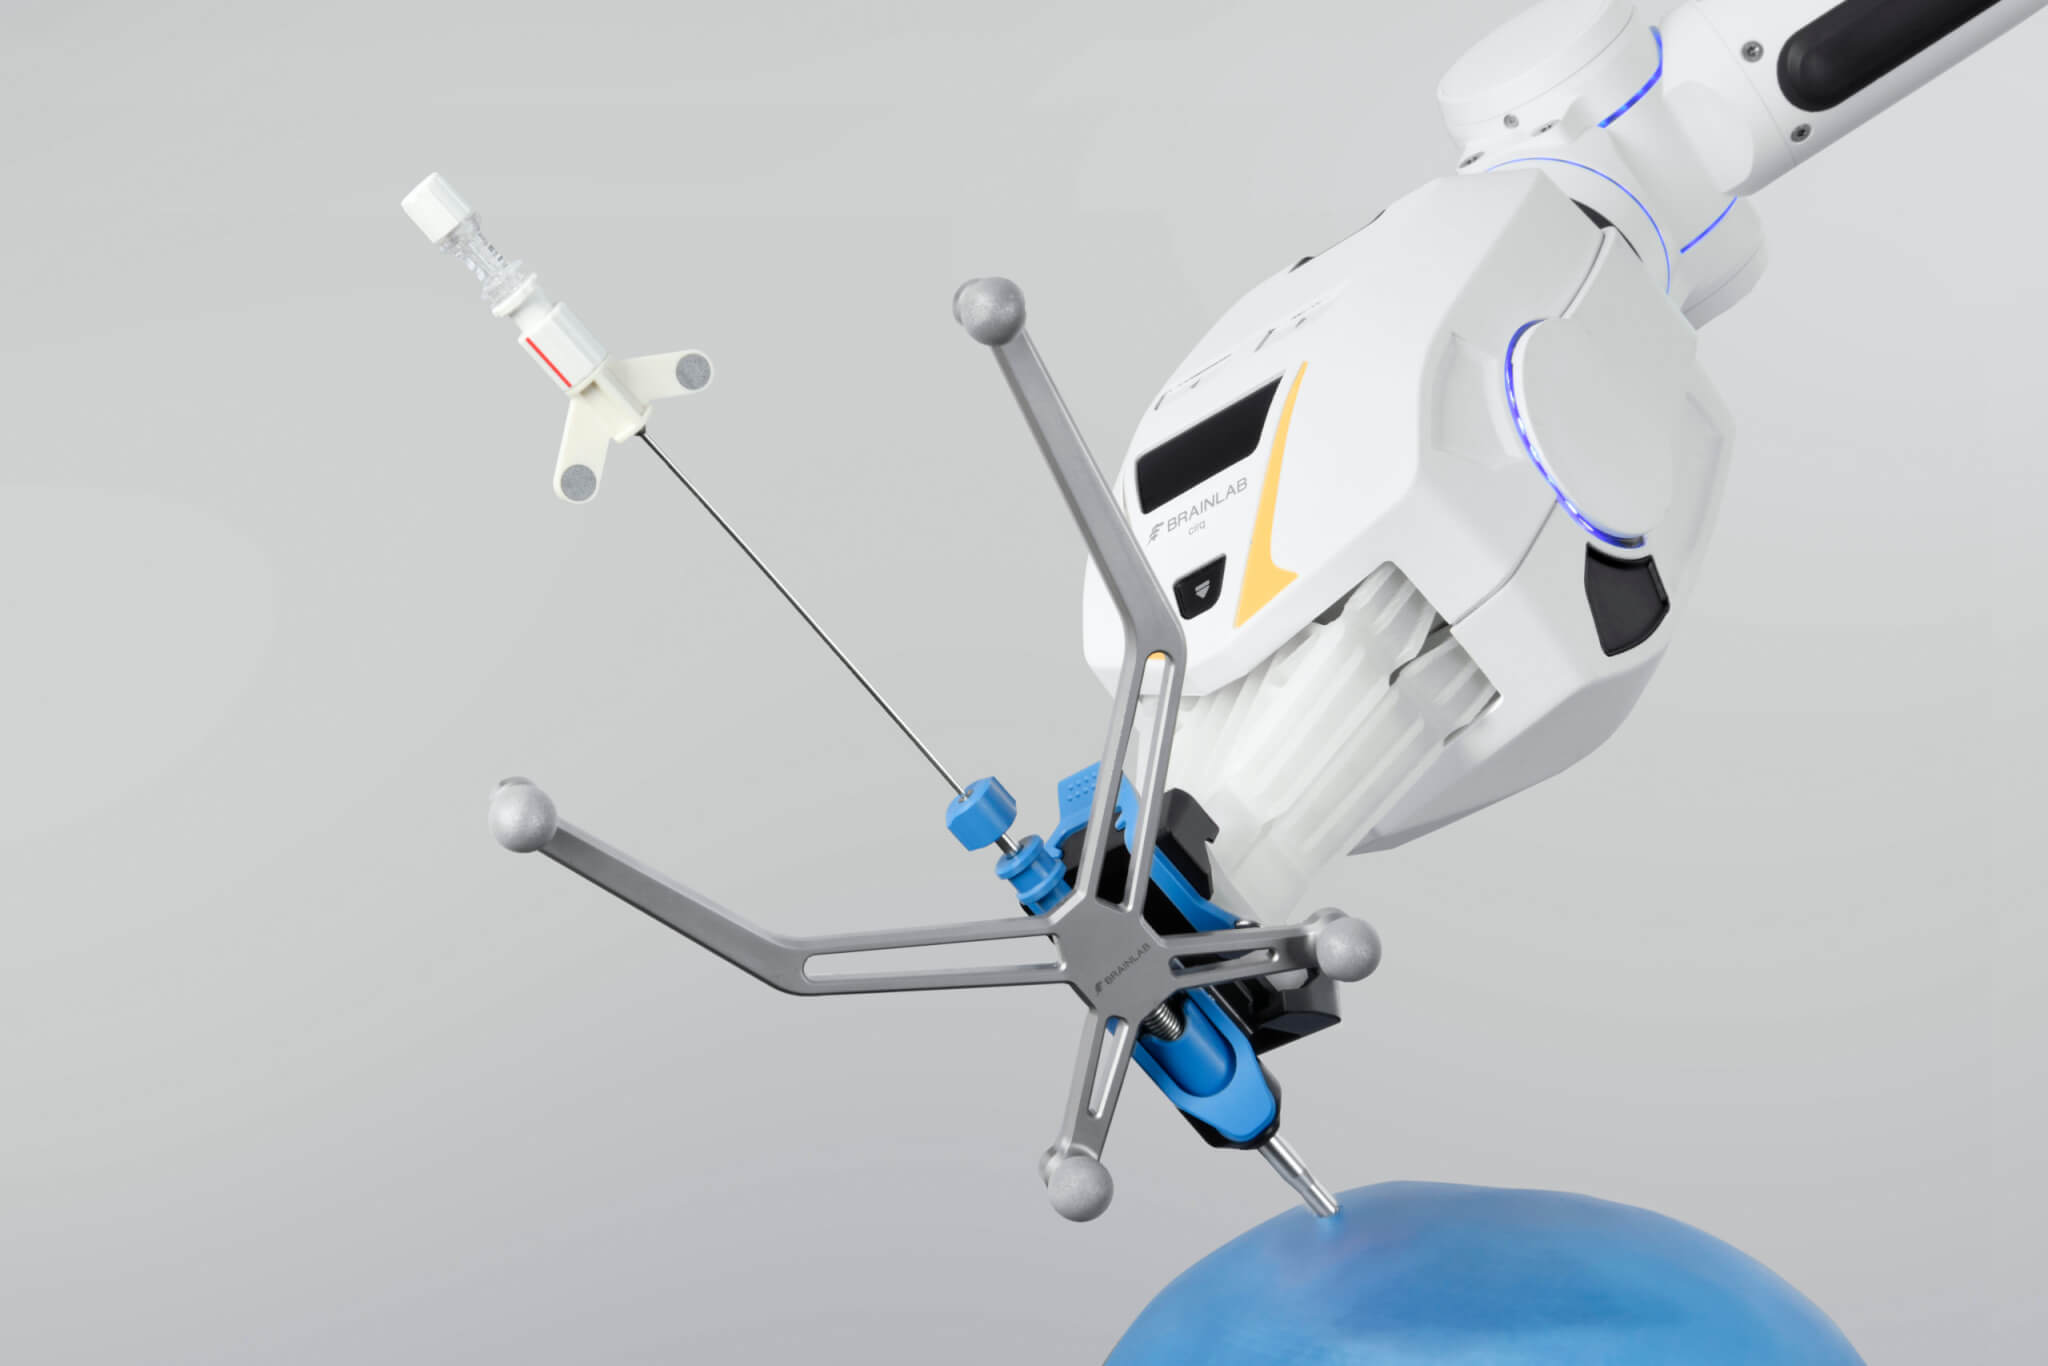 机器人手术臂系统手持导航活检针，停留在颅骨手术模块浅灰色背景前的蓝色颅骨图像上